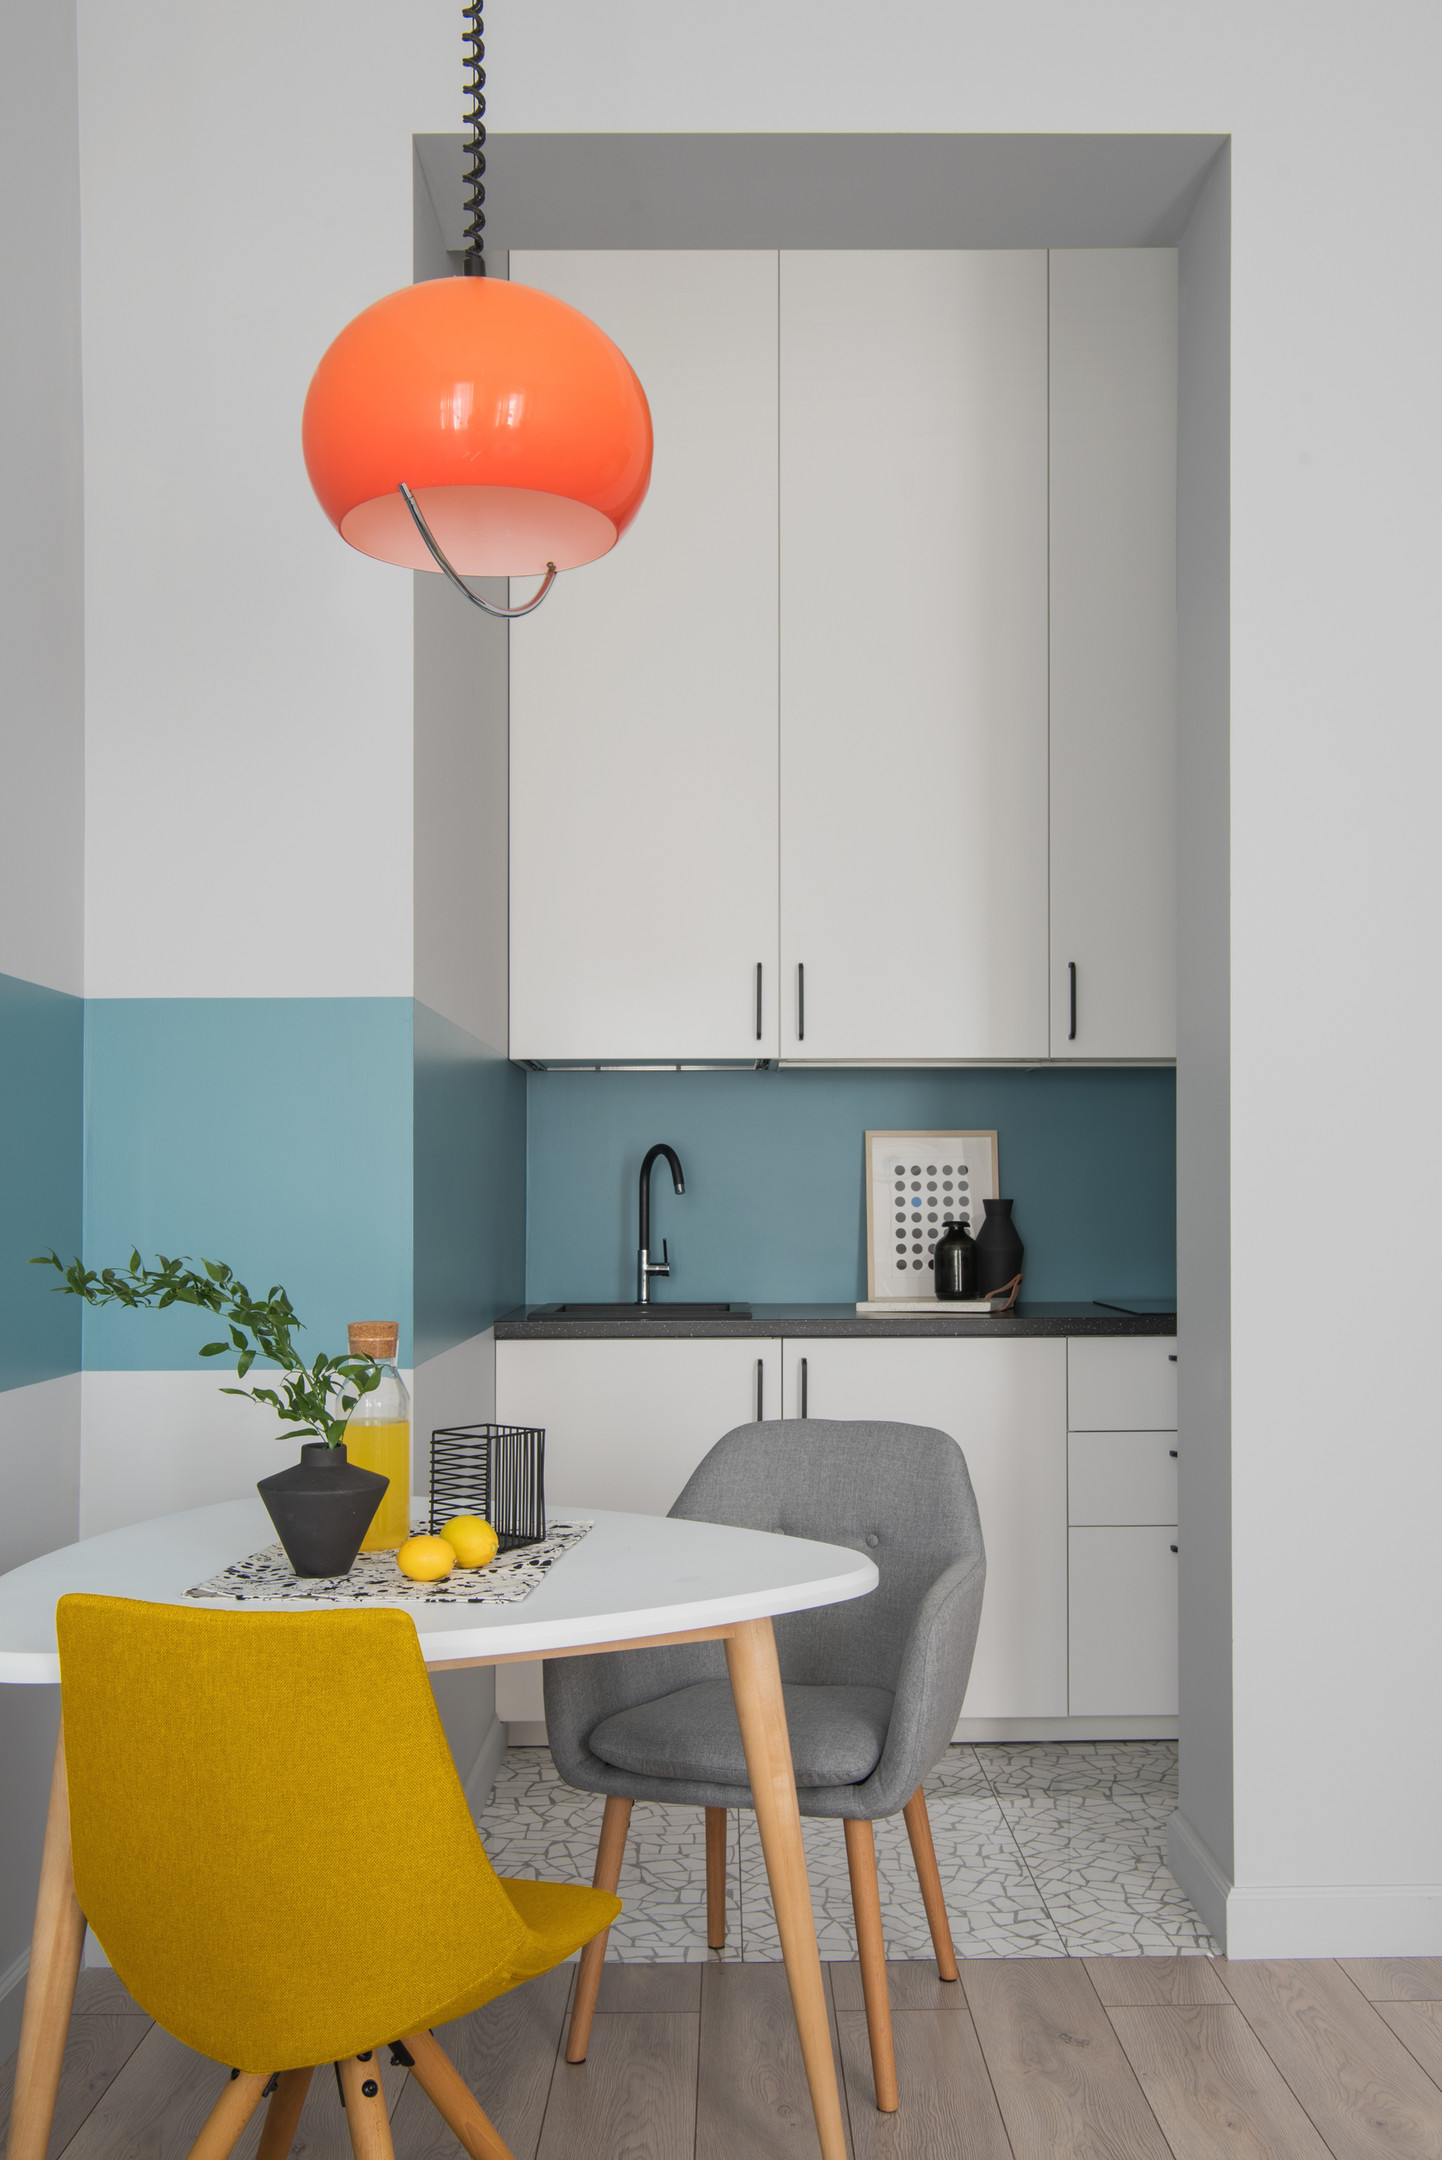  Sọc kẻ ngang màu xanh lam nối dài từ tường hành lang đến cả phòng bếp và phòng khách tạo sự liên kết các khu vực chức năng trong căn hộ. Tại phòng bếp, dải xanh này đồng thời trang trí cho backsplash nổi bật giữa hệ tủ bếp màu trắng sạch sẽ.